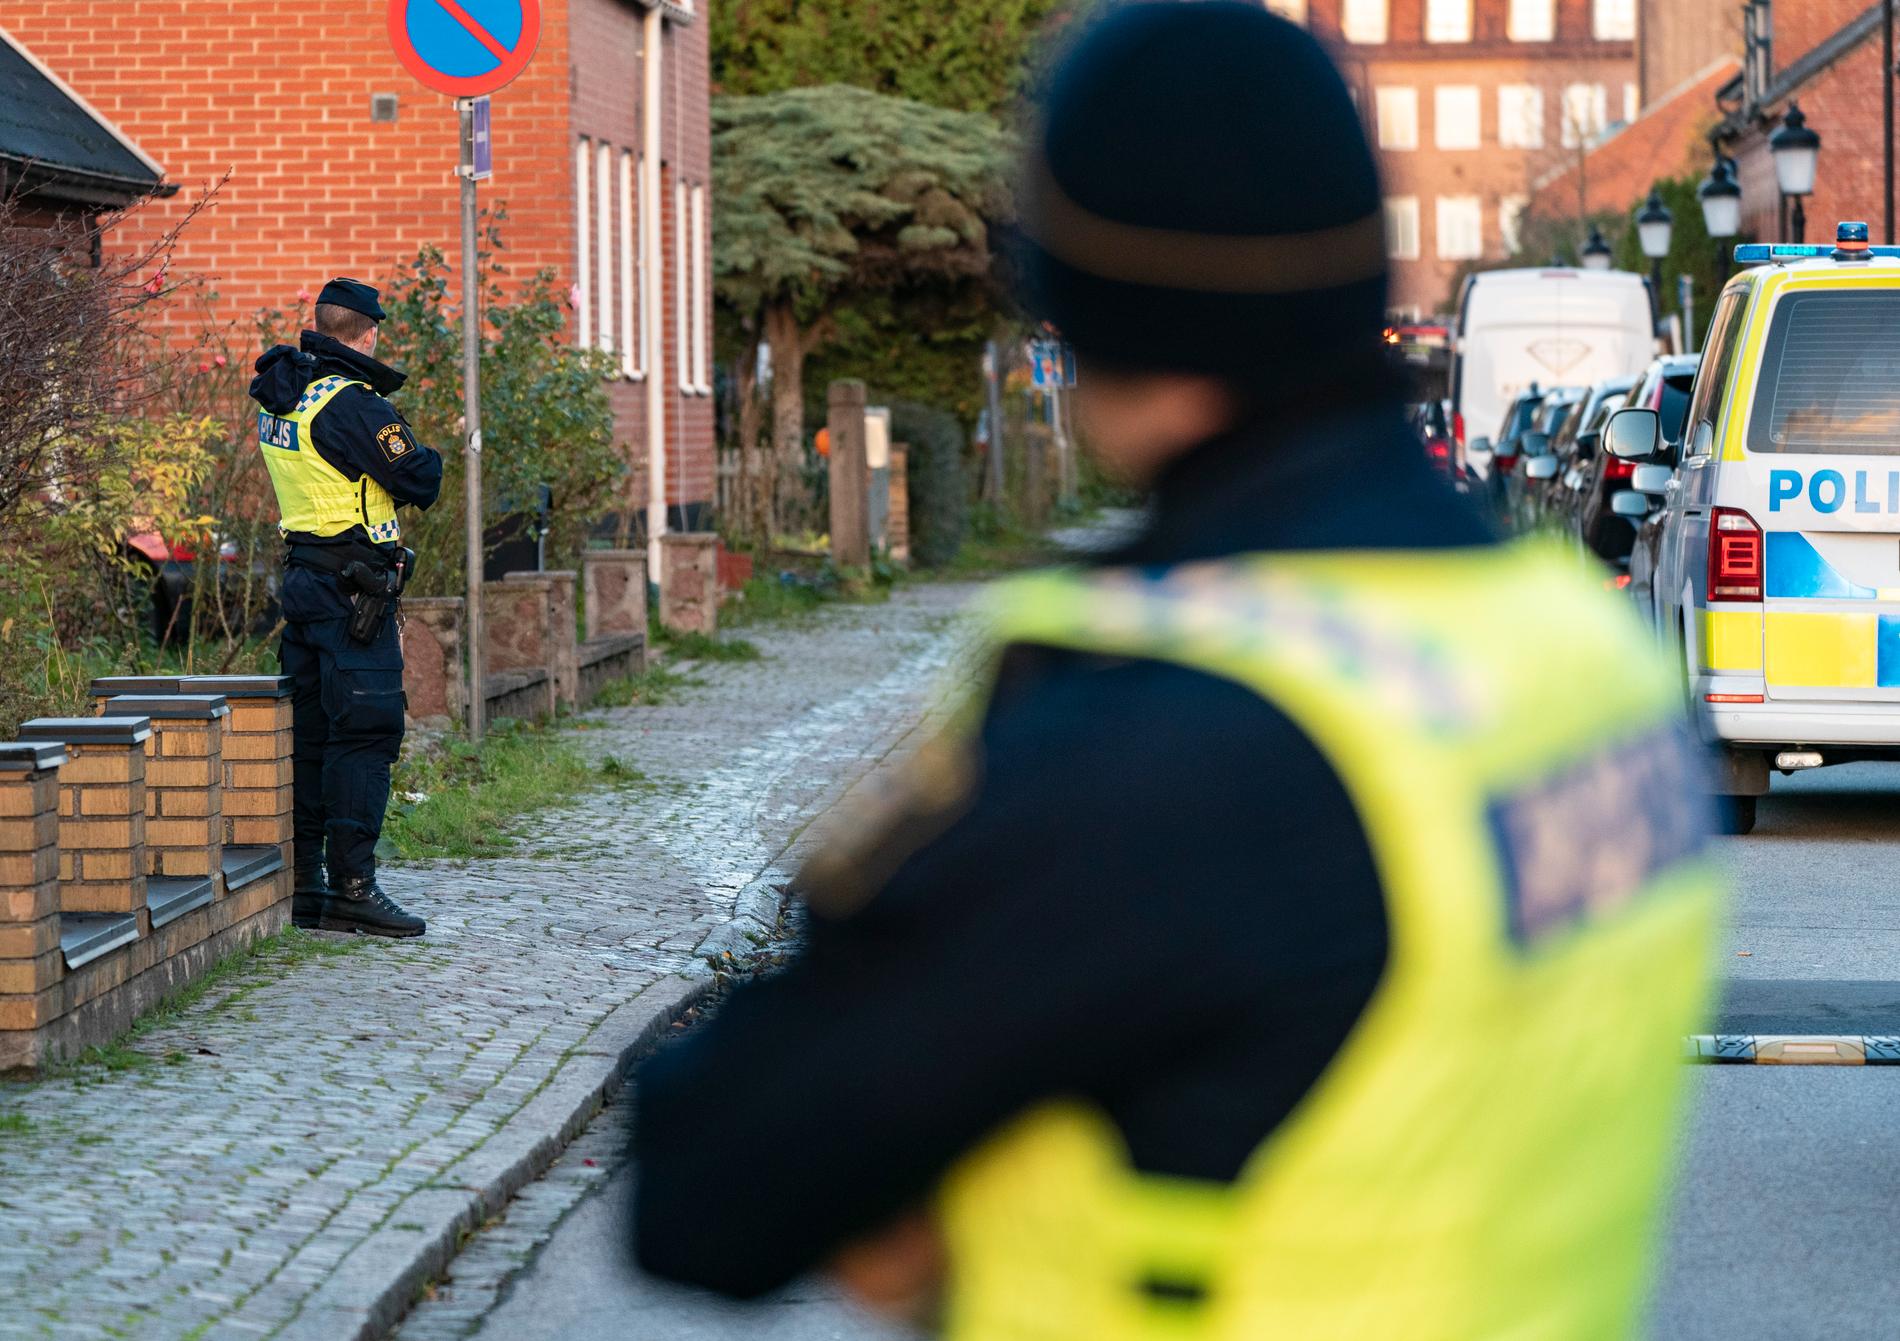 Natten till den 3 november hittades en knivhuggen 17-åring utomhus i Malmö. Han avled till följd av skadorna. Arkivbild.